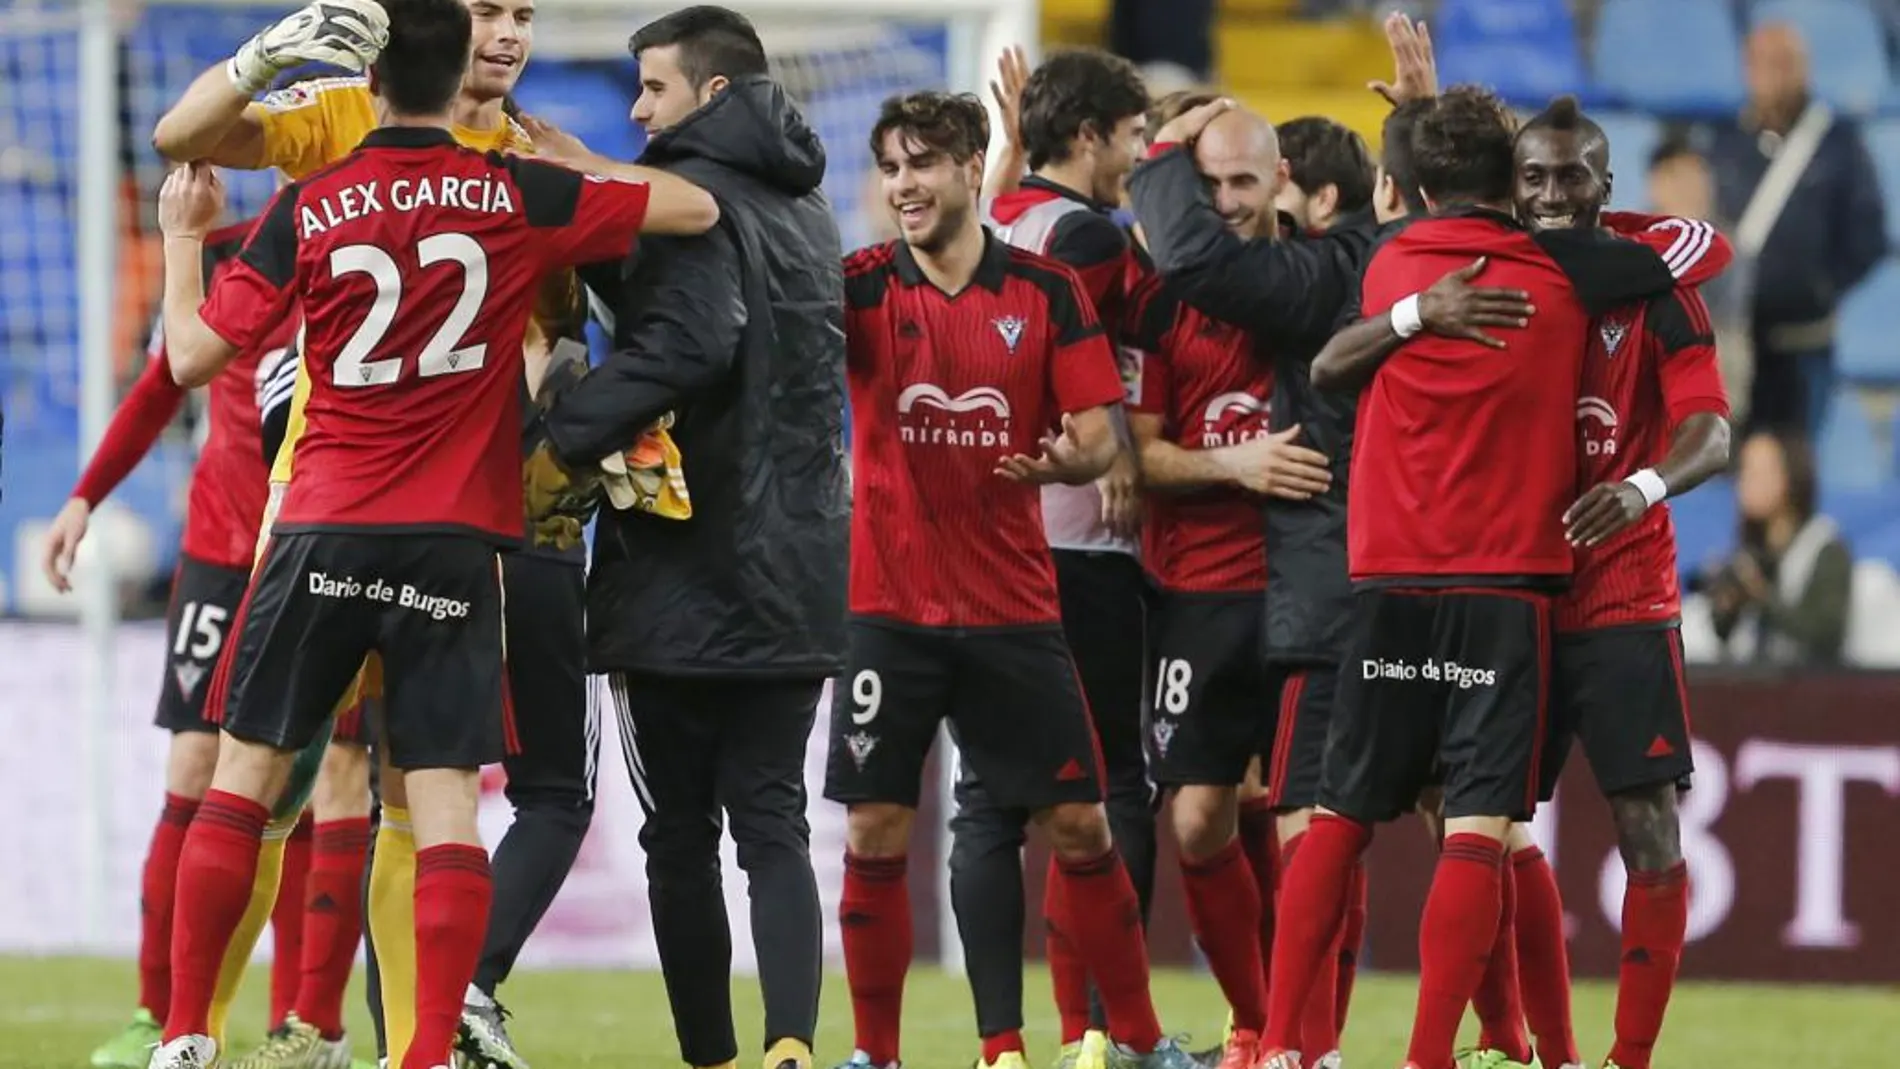 Los jugadores del Mirandés celebran el pase a octavos de final de la Copa del Rey al eliminar al Málaga CF tras el partido